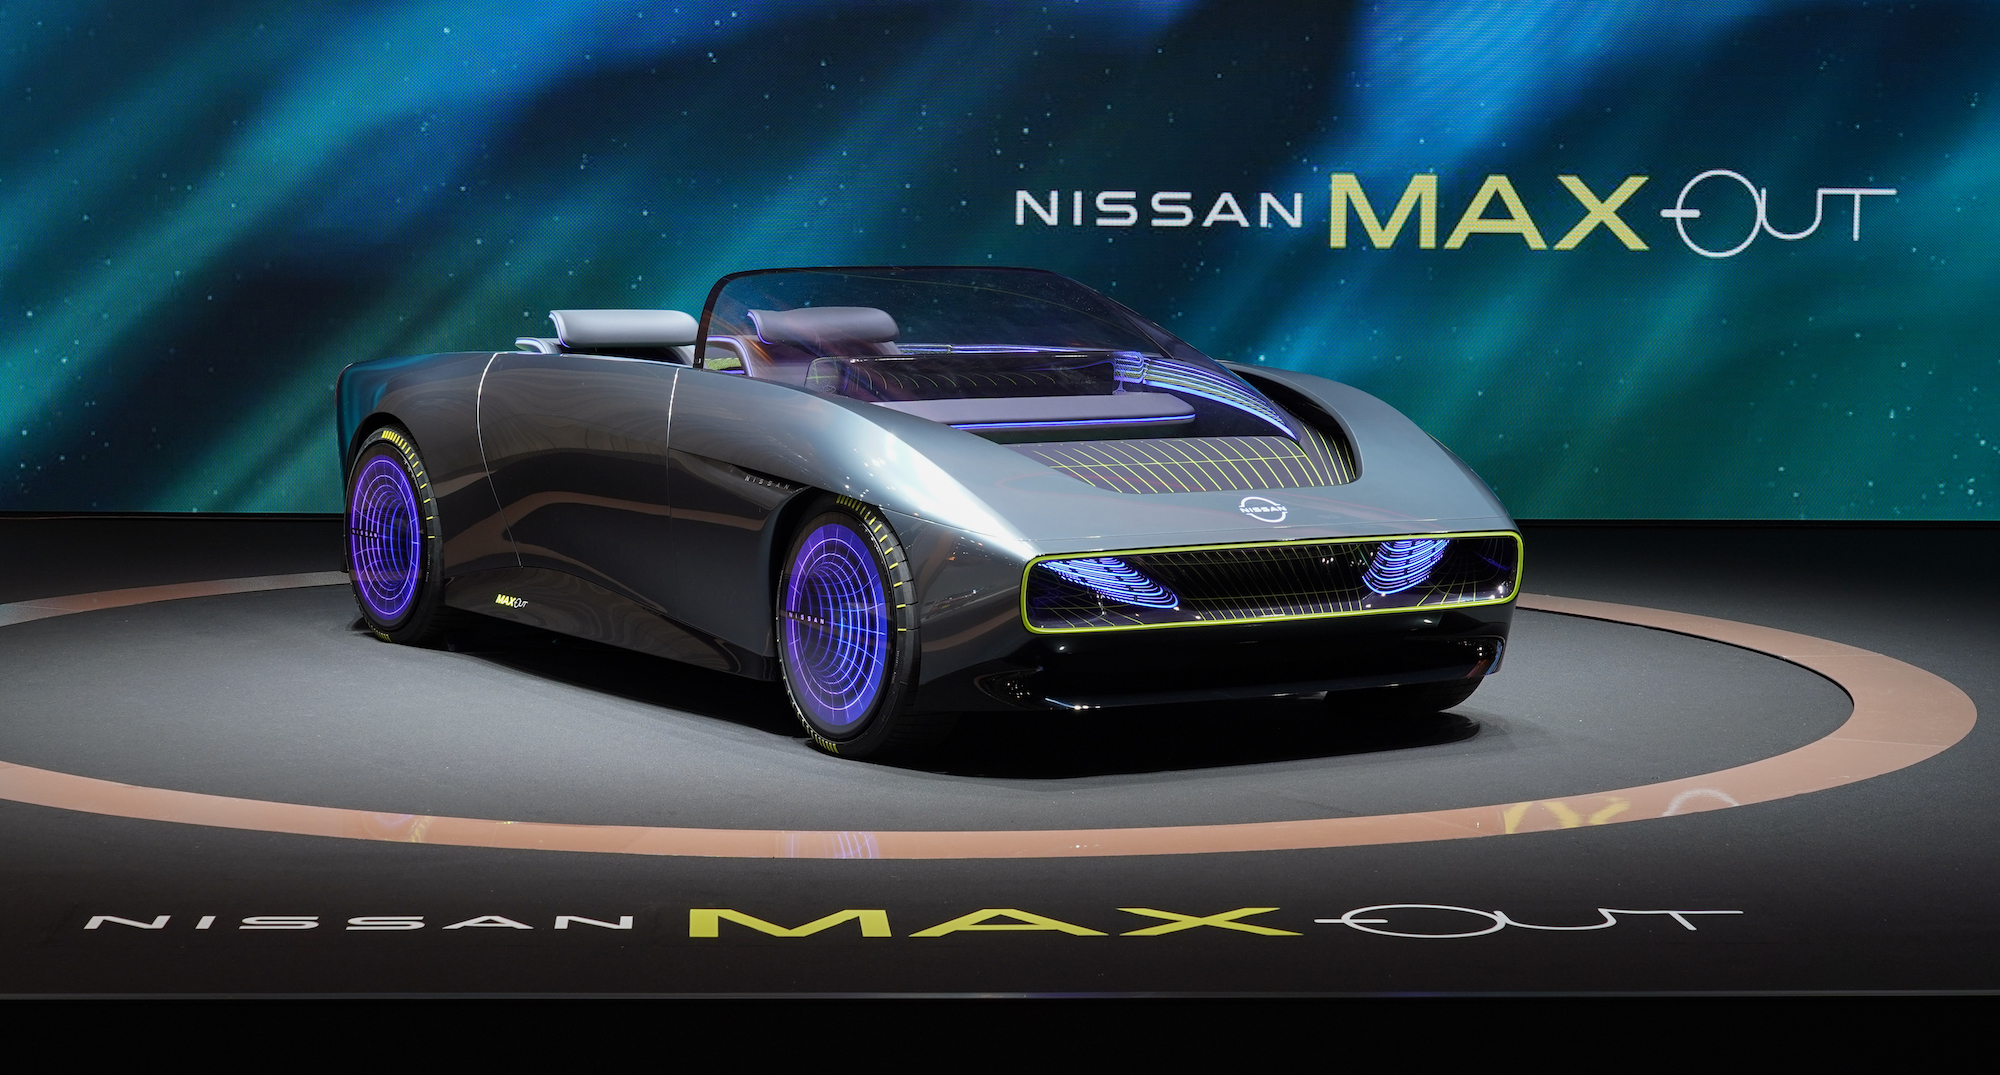 Concepto descapotable Nissan Max Out